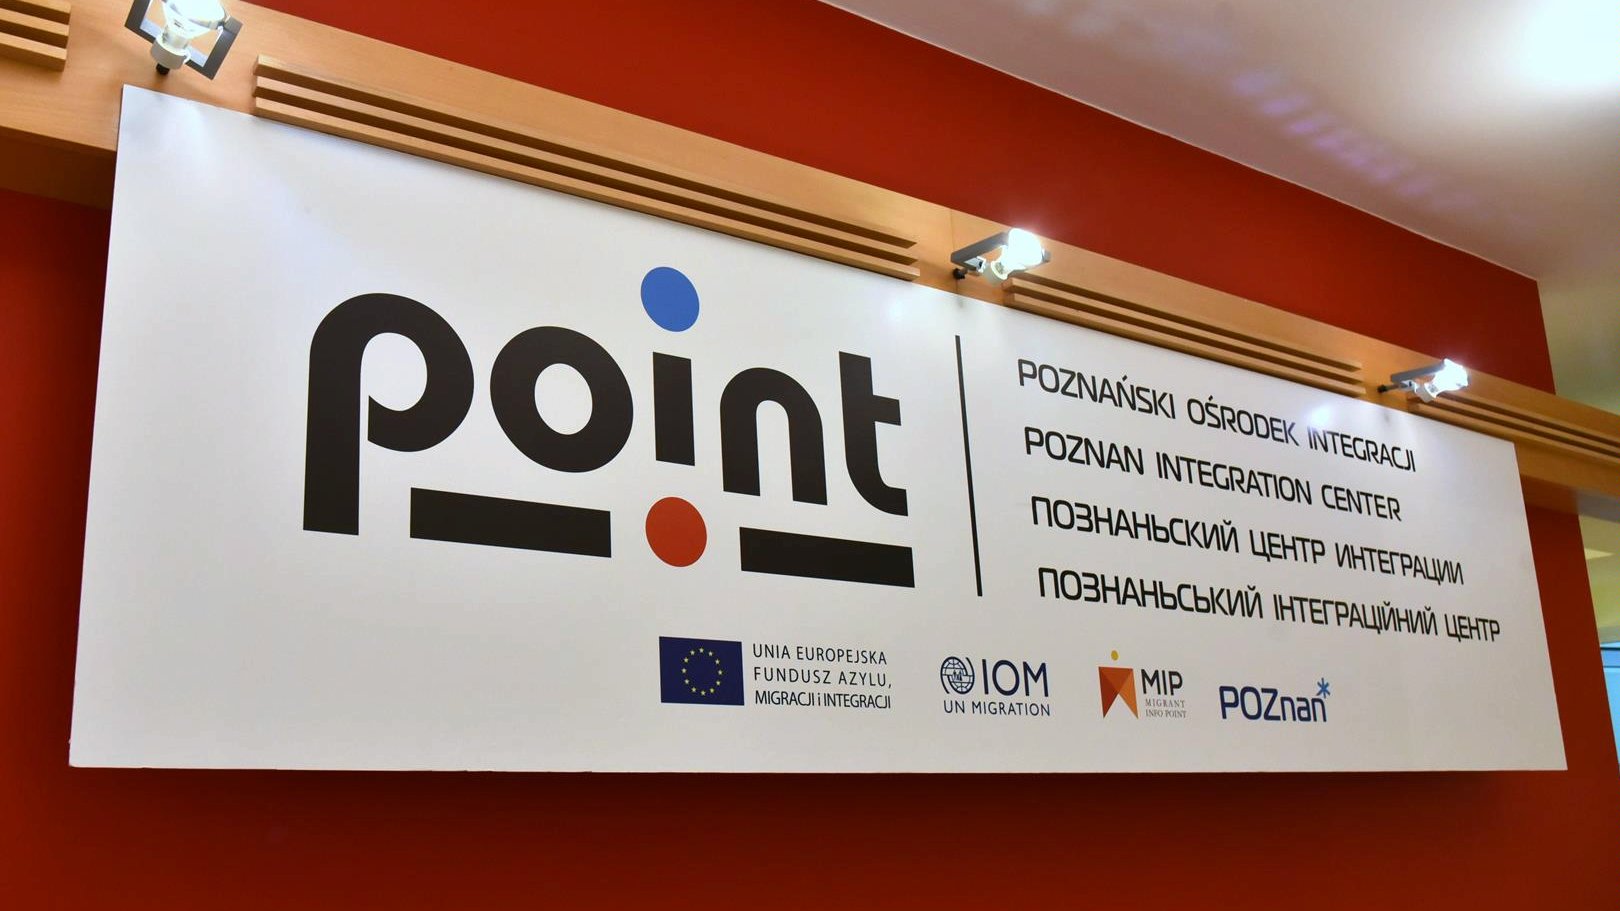 Poznański Ośrodek Integracji (POINT) tablica informacyjna